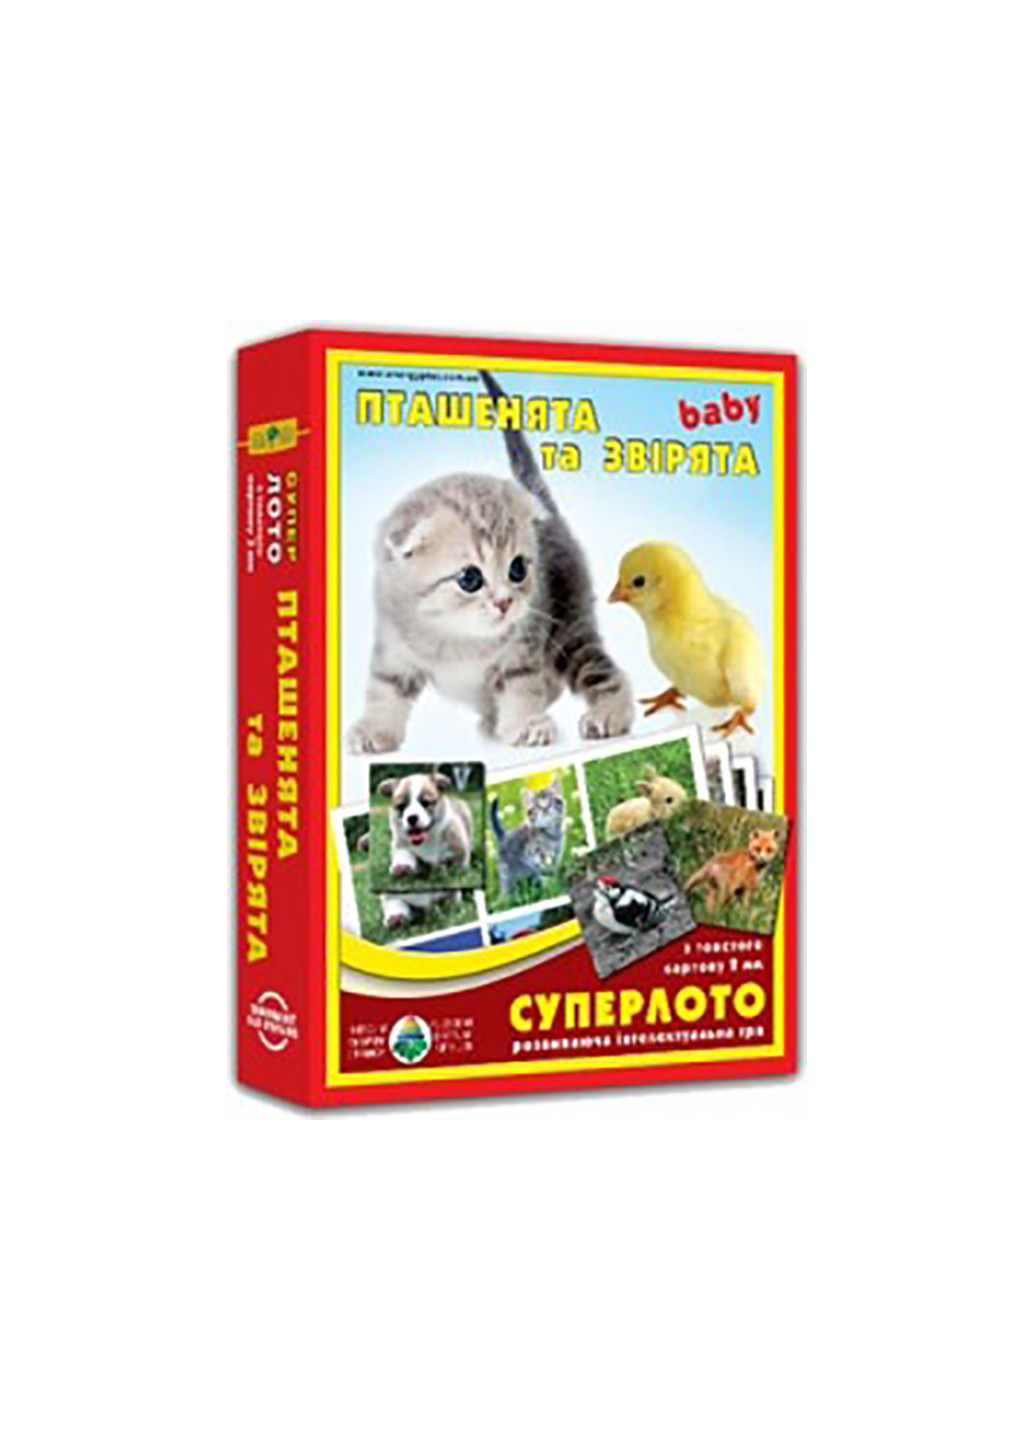 Супер Лото "Птенцы и звери" 1985 Киевская фабрика игрушек (259885034)